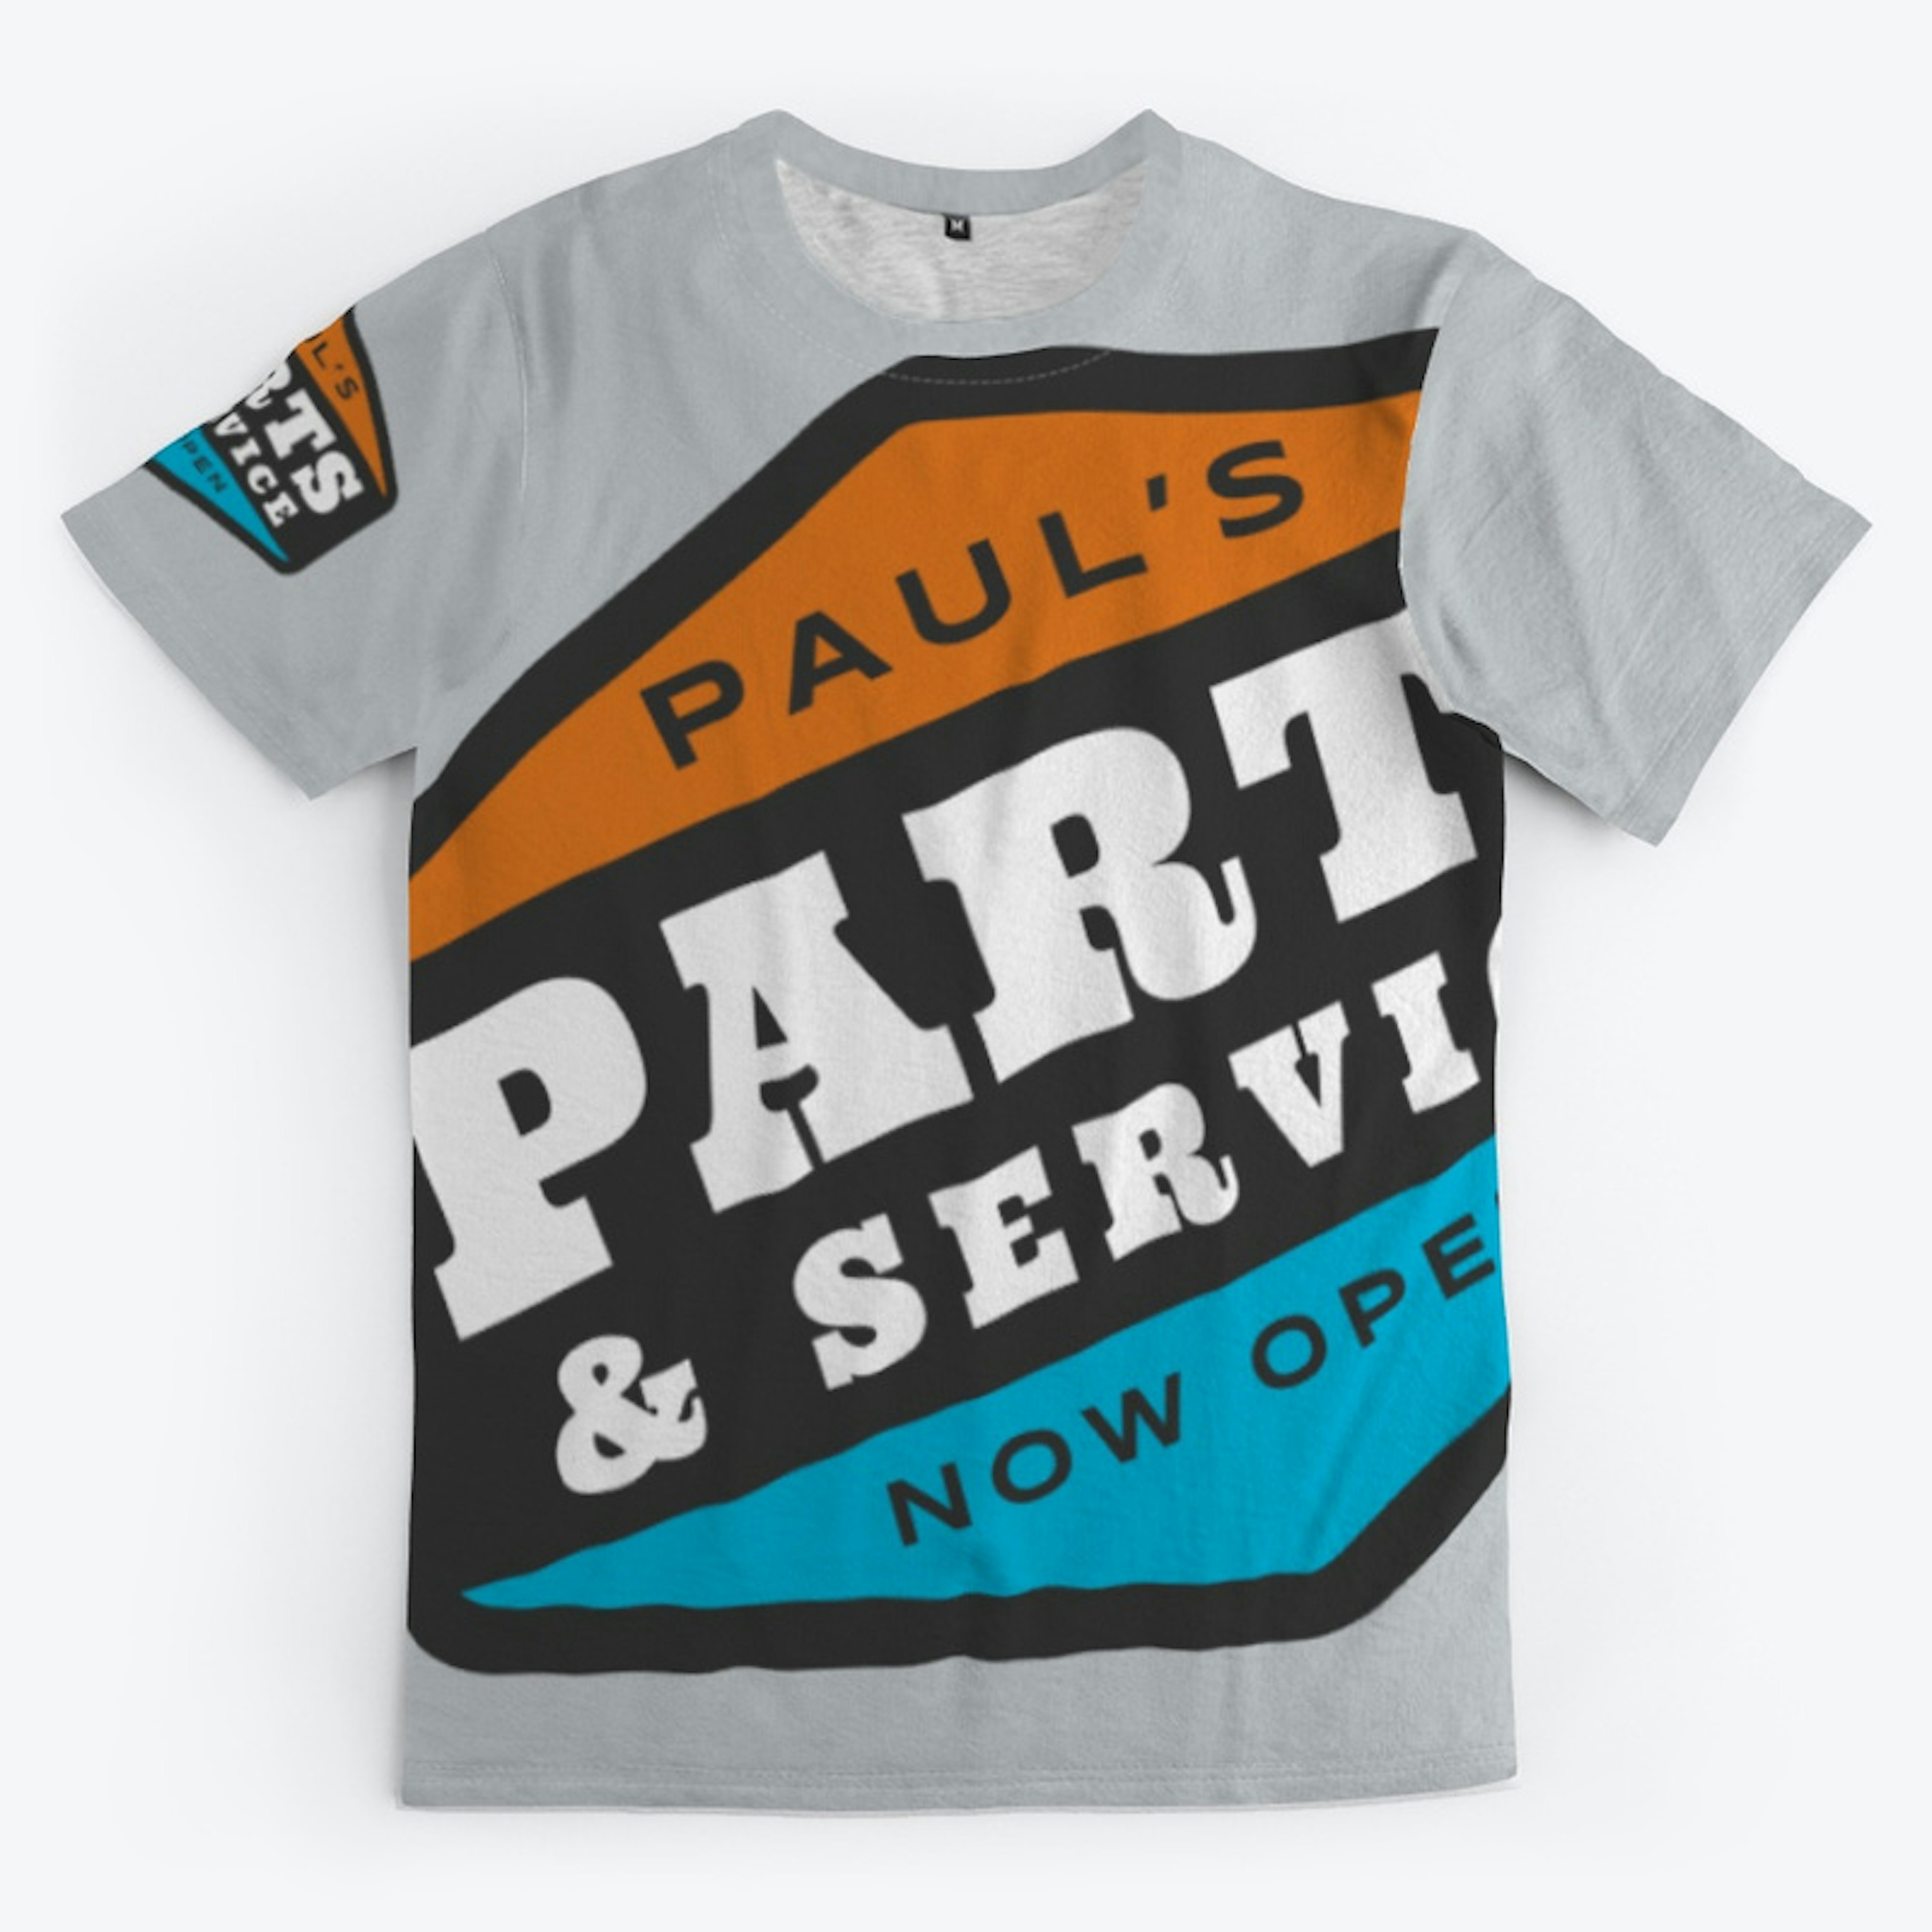 Paul's Parts & Service Now Open